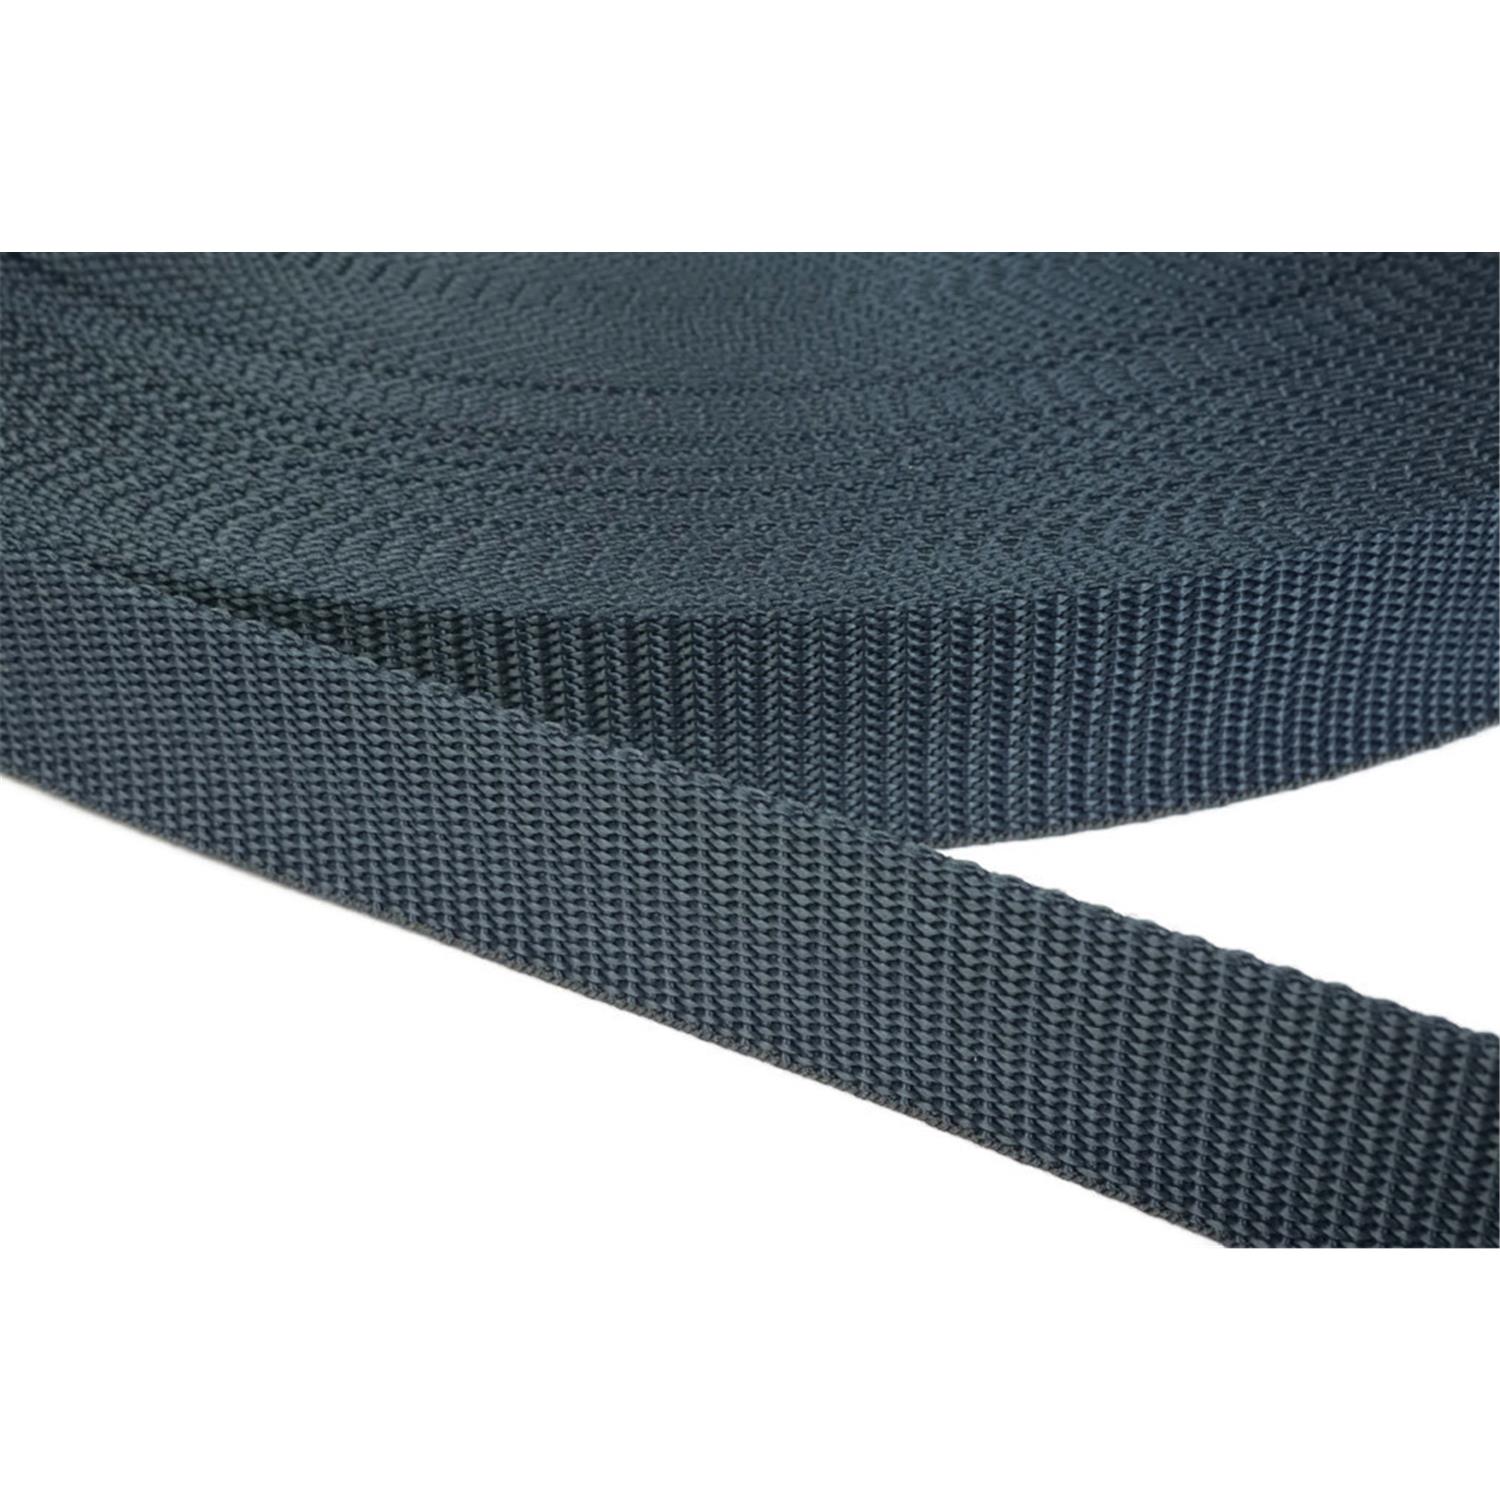 Gurtband 40mm breit aus Polypropylen in 41 Farben 40 - dunkelgrau/blau 12 Meter